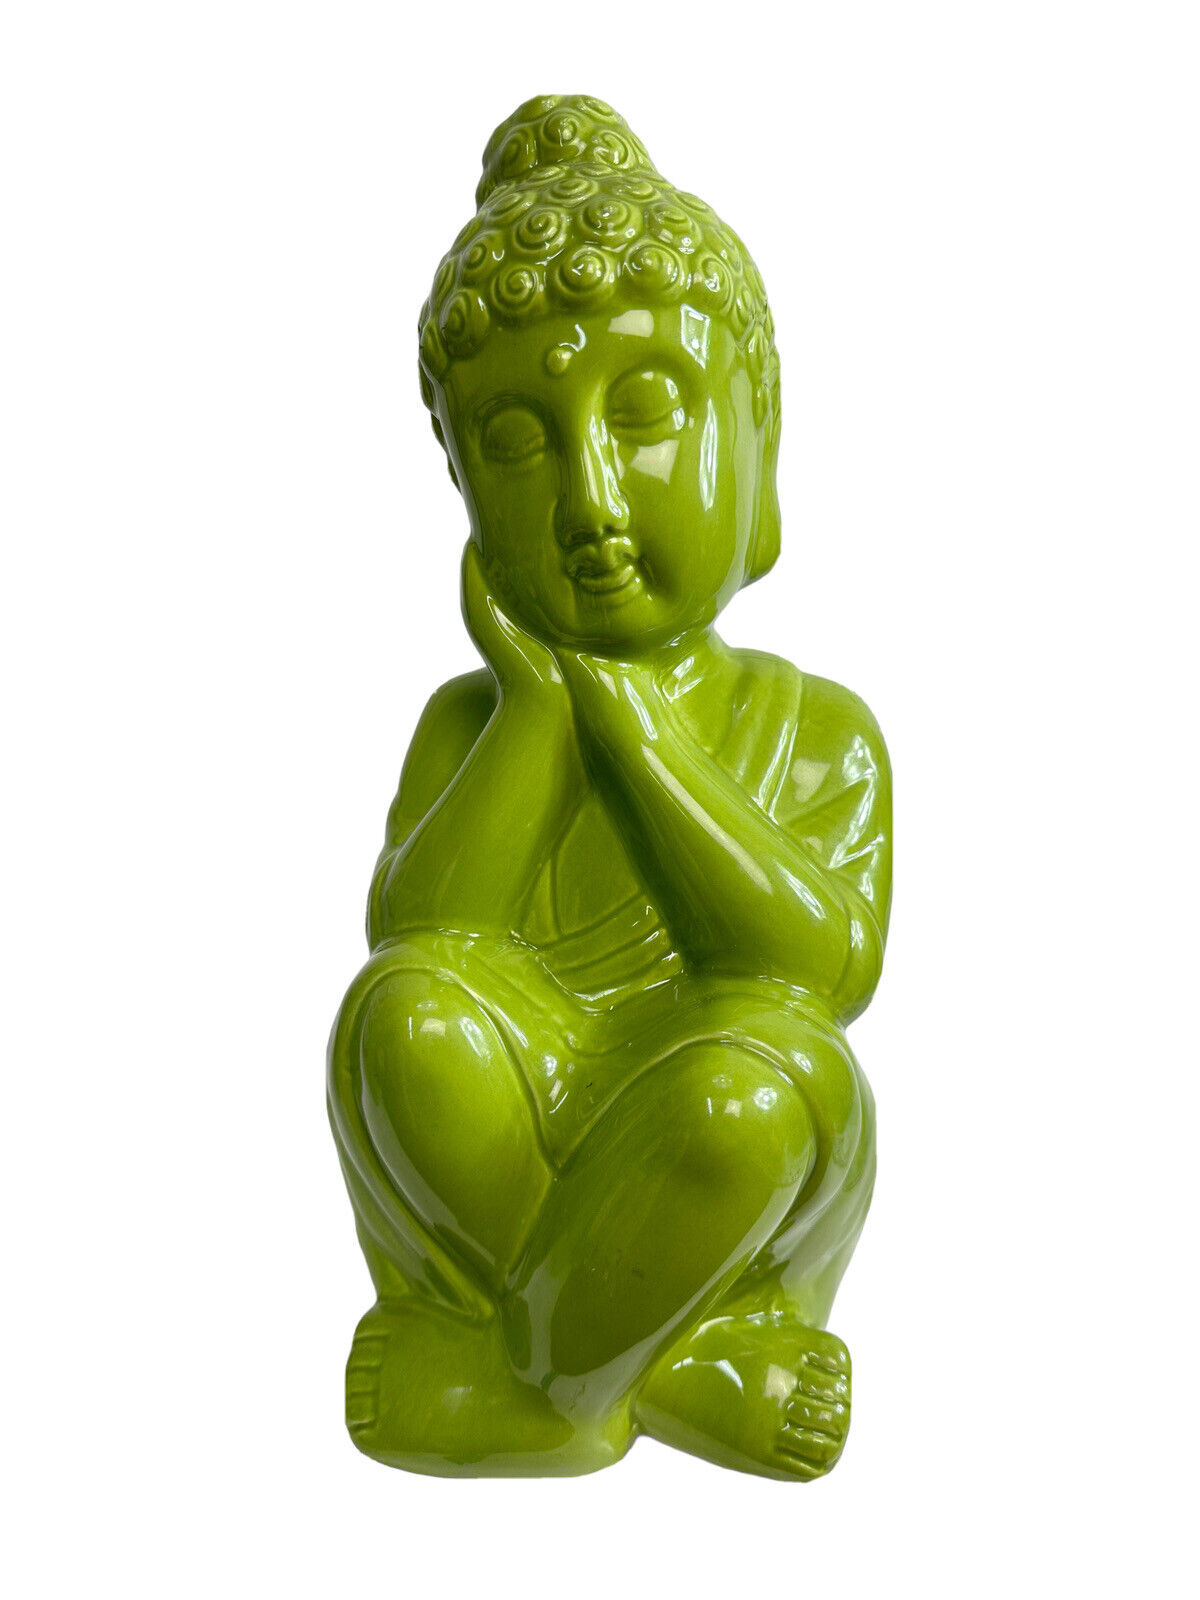 Brand New Medium Sitting Buddha Meditating Buddha Statue Green Color Ceramic